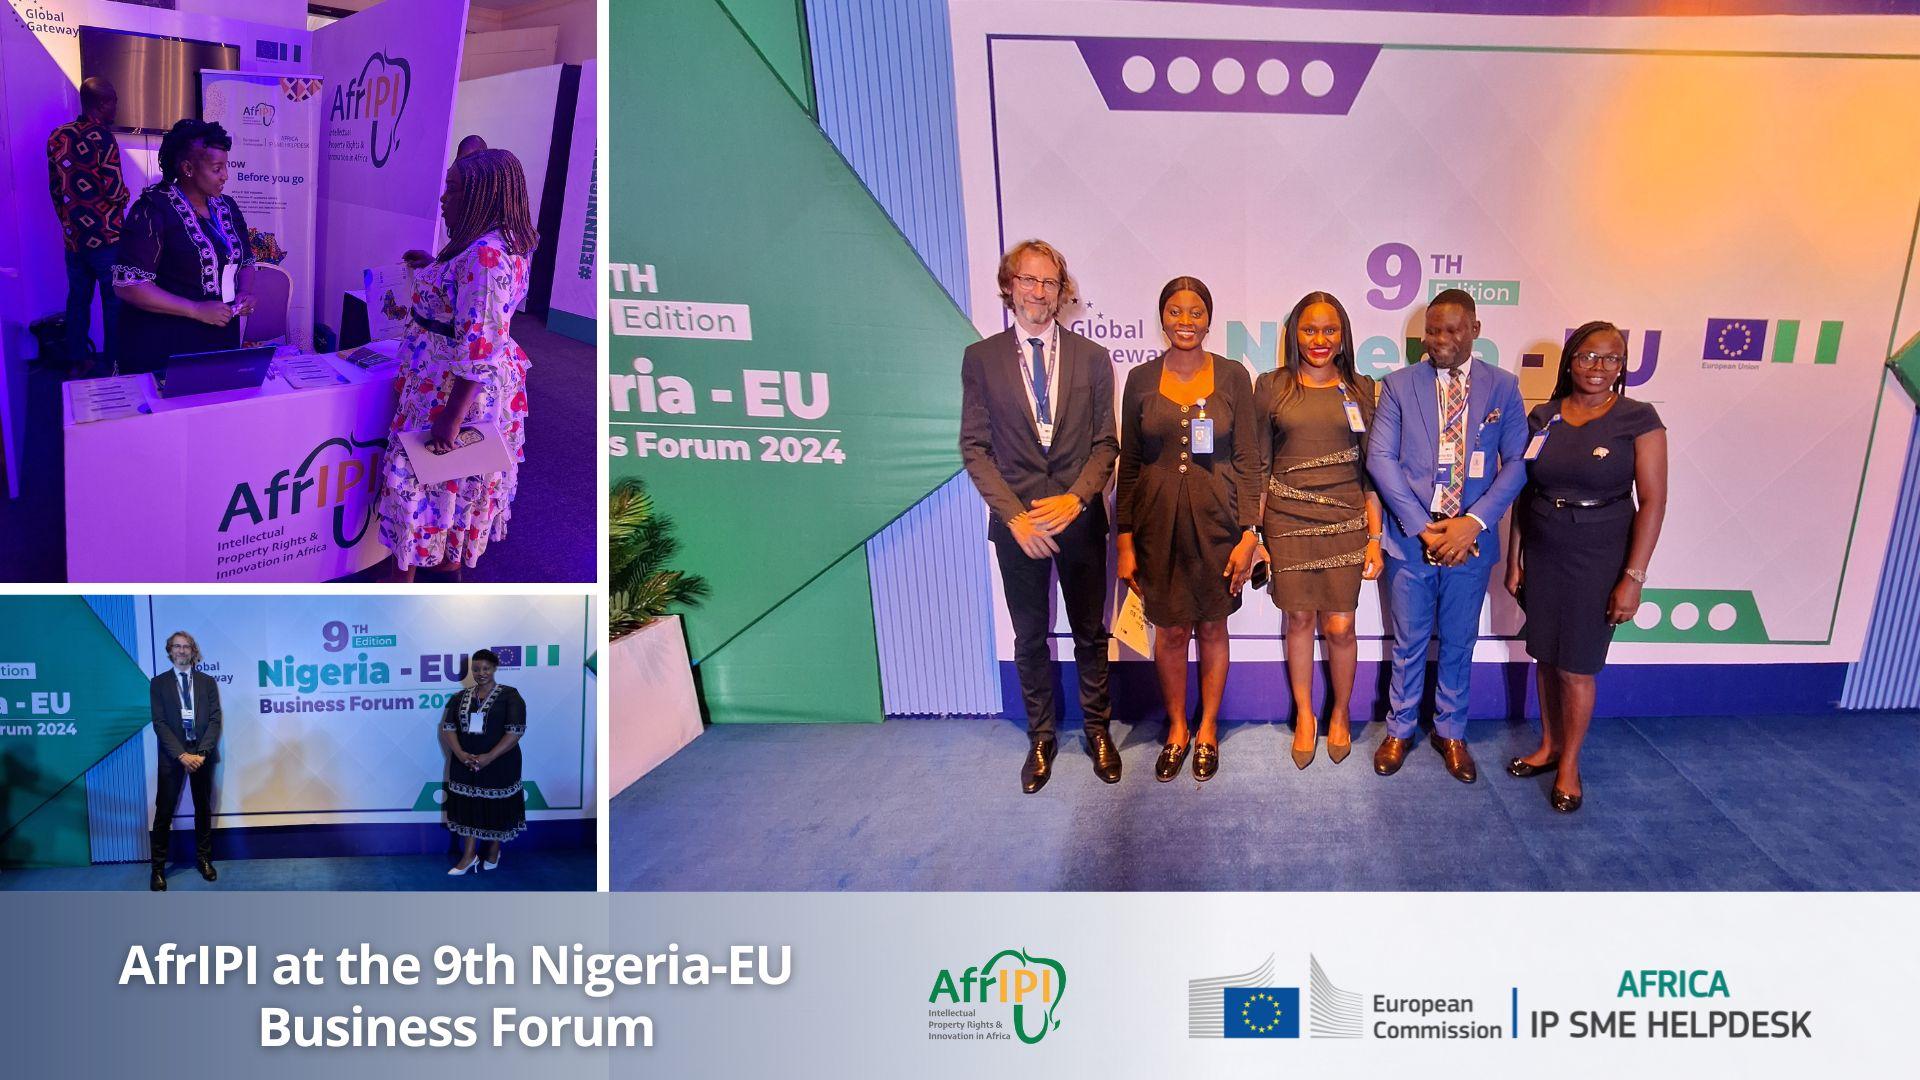 AfrIPI at the Nigeria-EU Business Forum